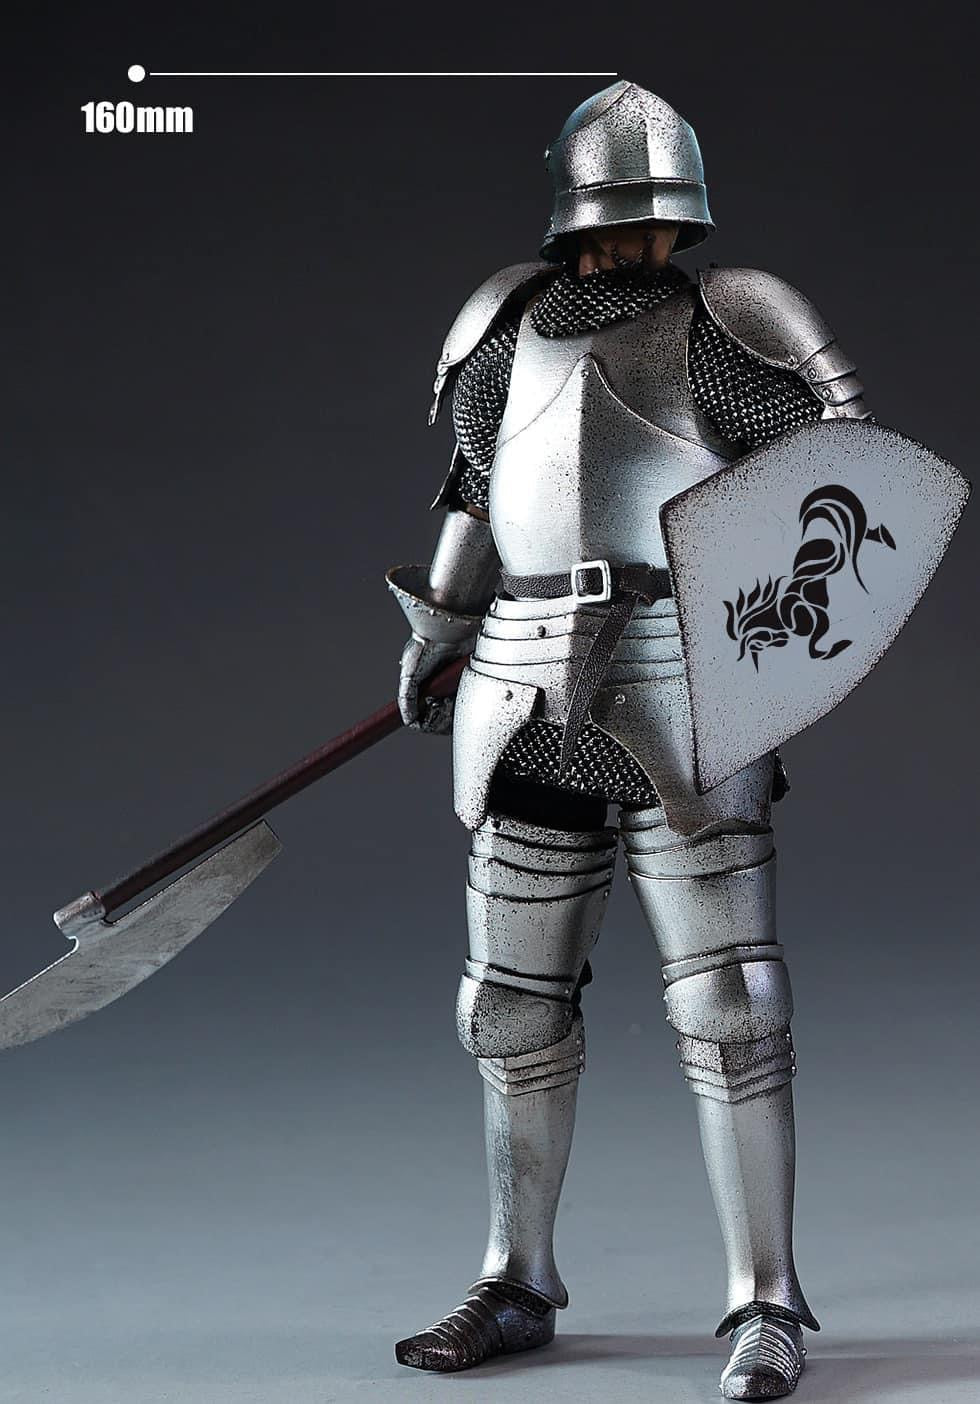 Pedido Figura Guard Knight - Palm Empire marca Coomodel PE016 escala pequeña 1/12